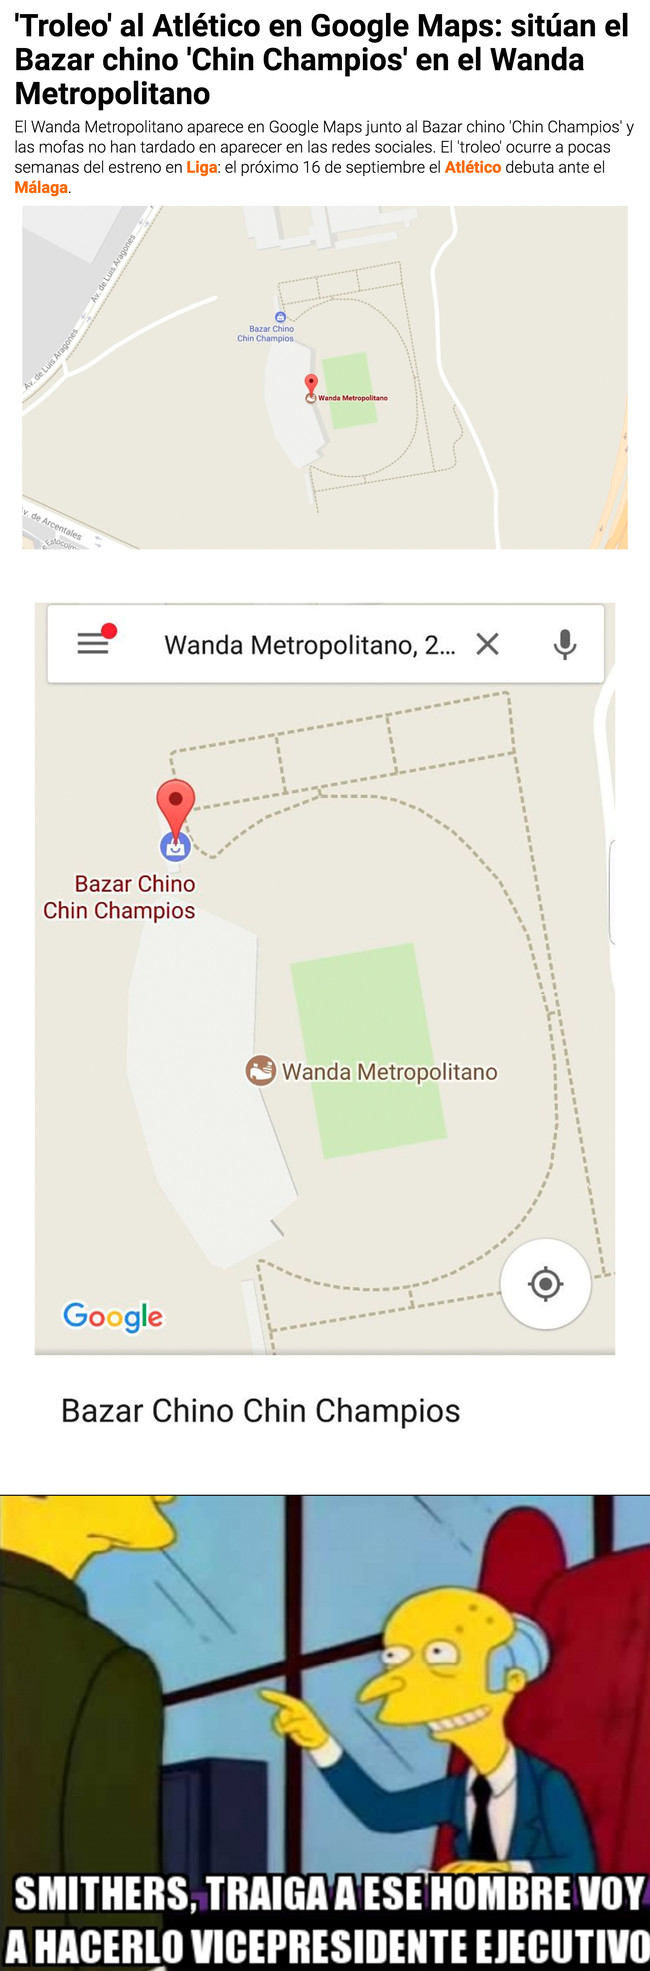 996412 - Trolean épicamente al Atlético poniendo este bazar chino al lado del Wanda Metropolitano